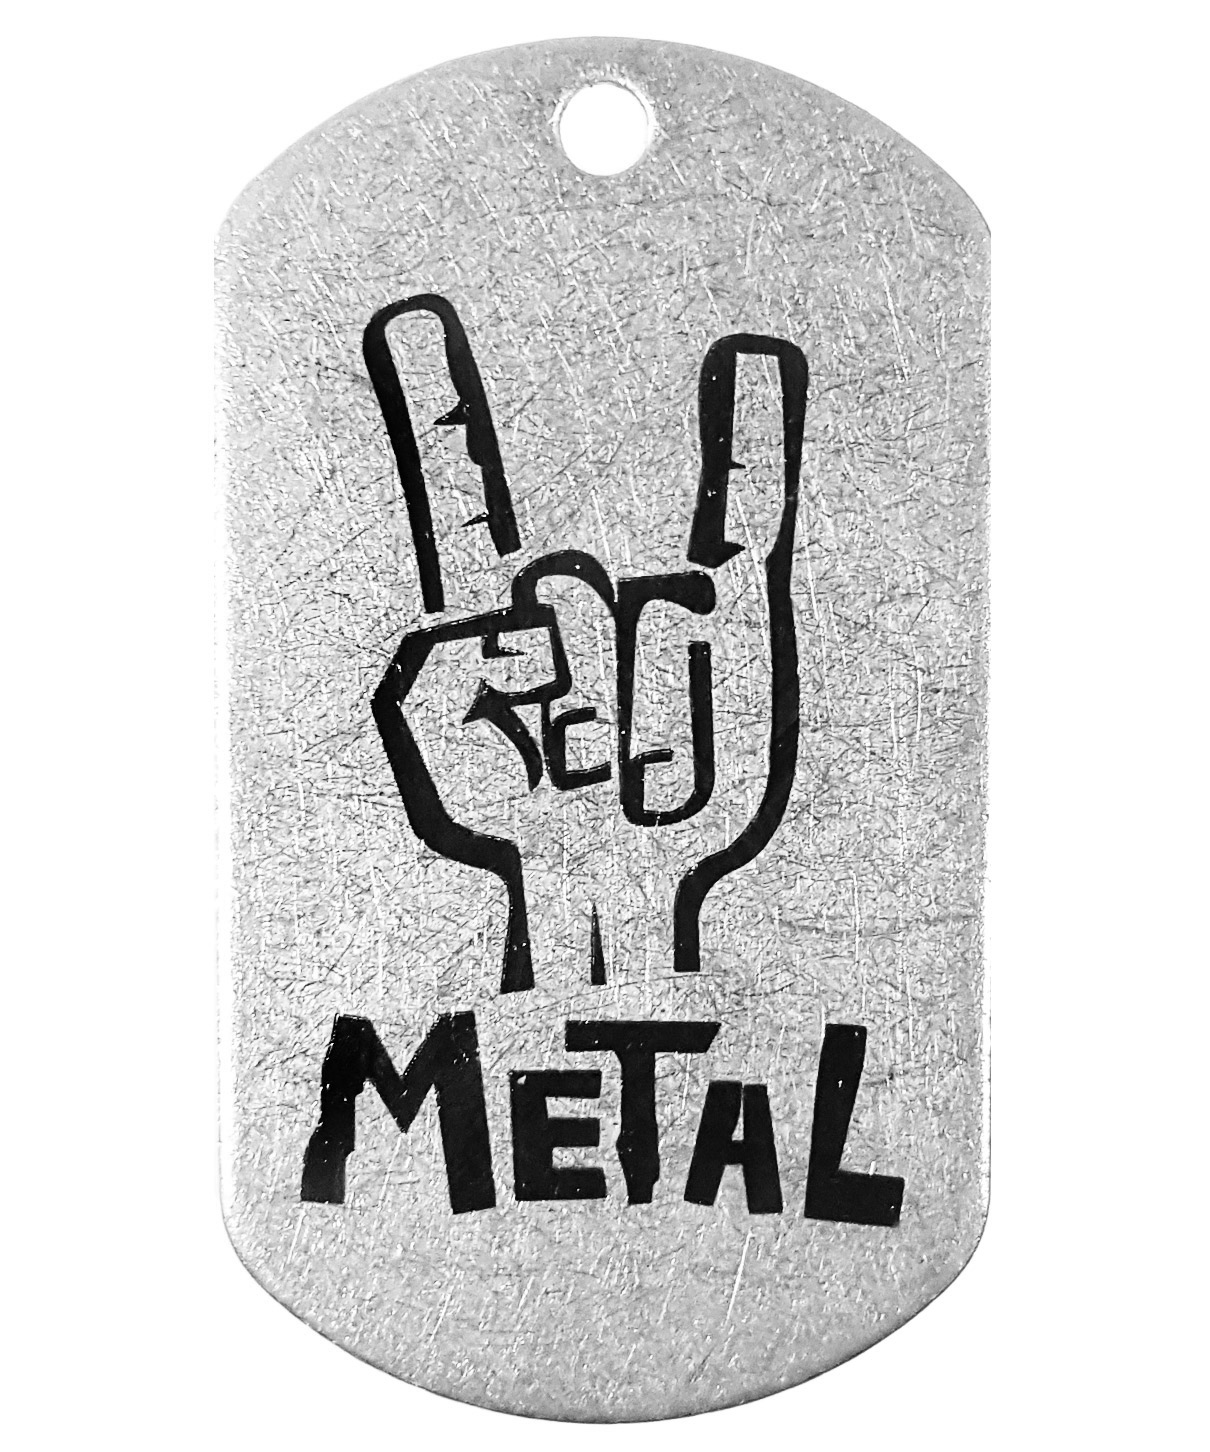 Жетон стальной Metal - фото 1 - rockbunker.ru